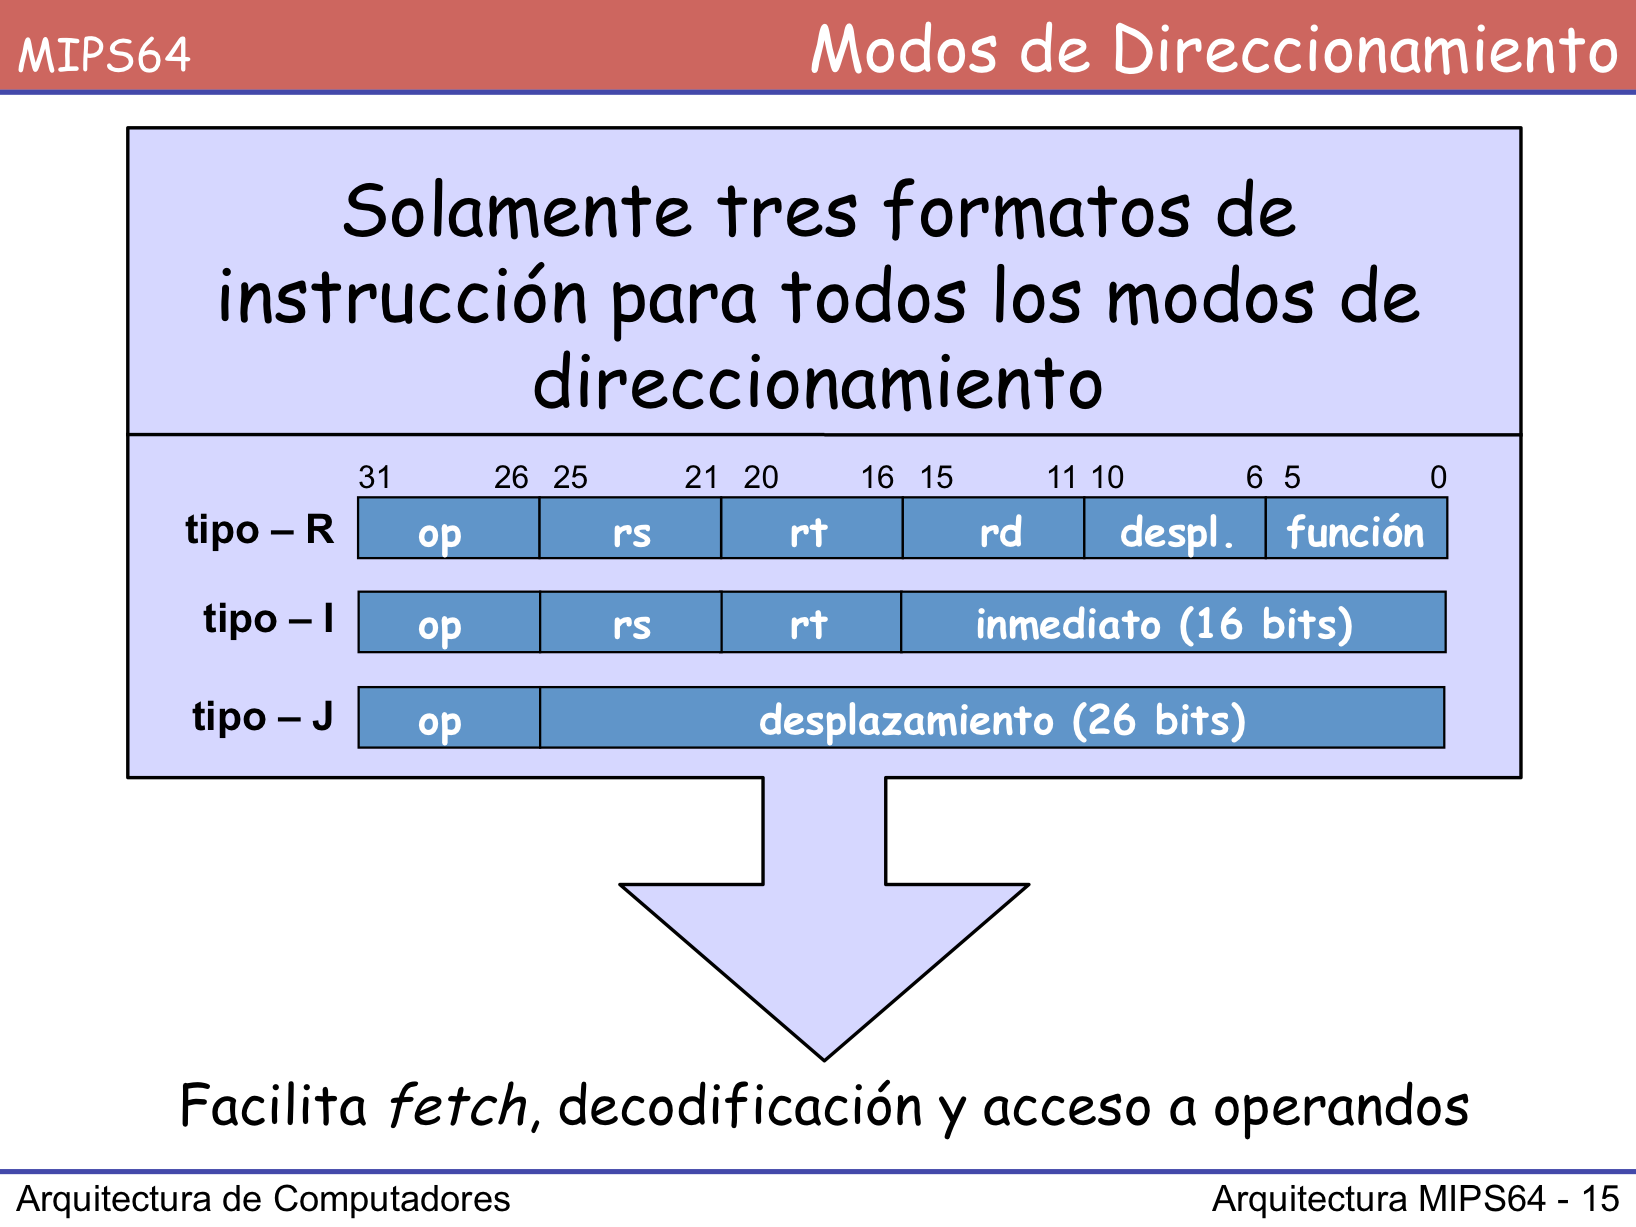 Todos los modos de direccionamiento que se han indicado en las últimas páginas se consiguen con tan solo tres formatos de instrucción y, en todos los casos, con la misma longitud de instrucción: 32